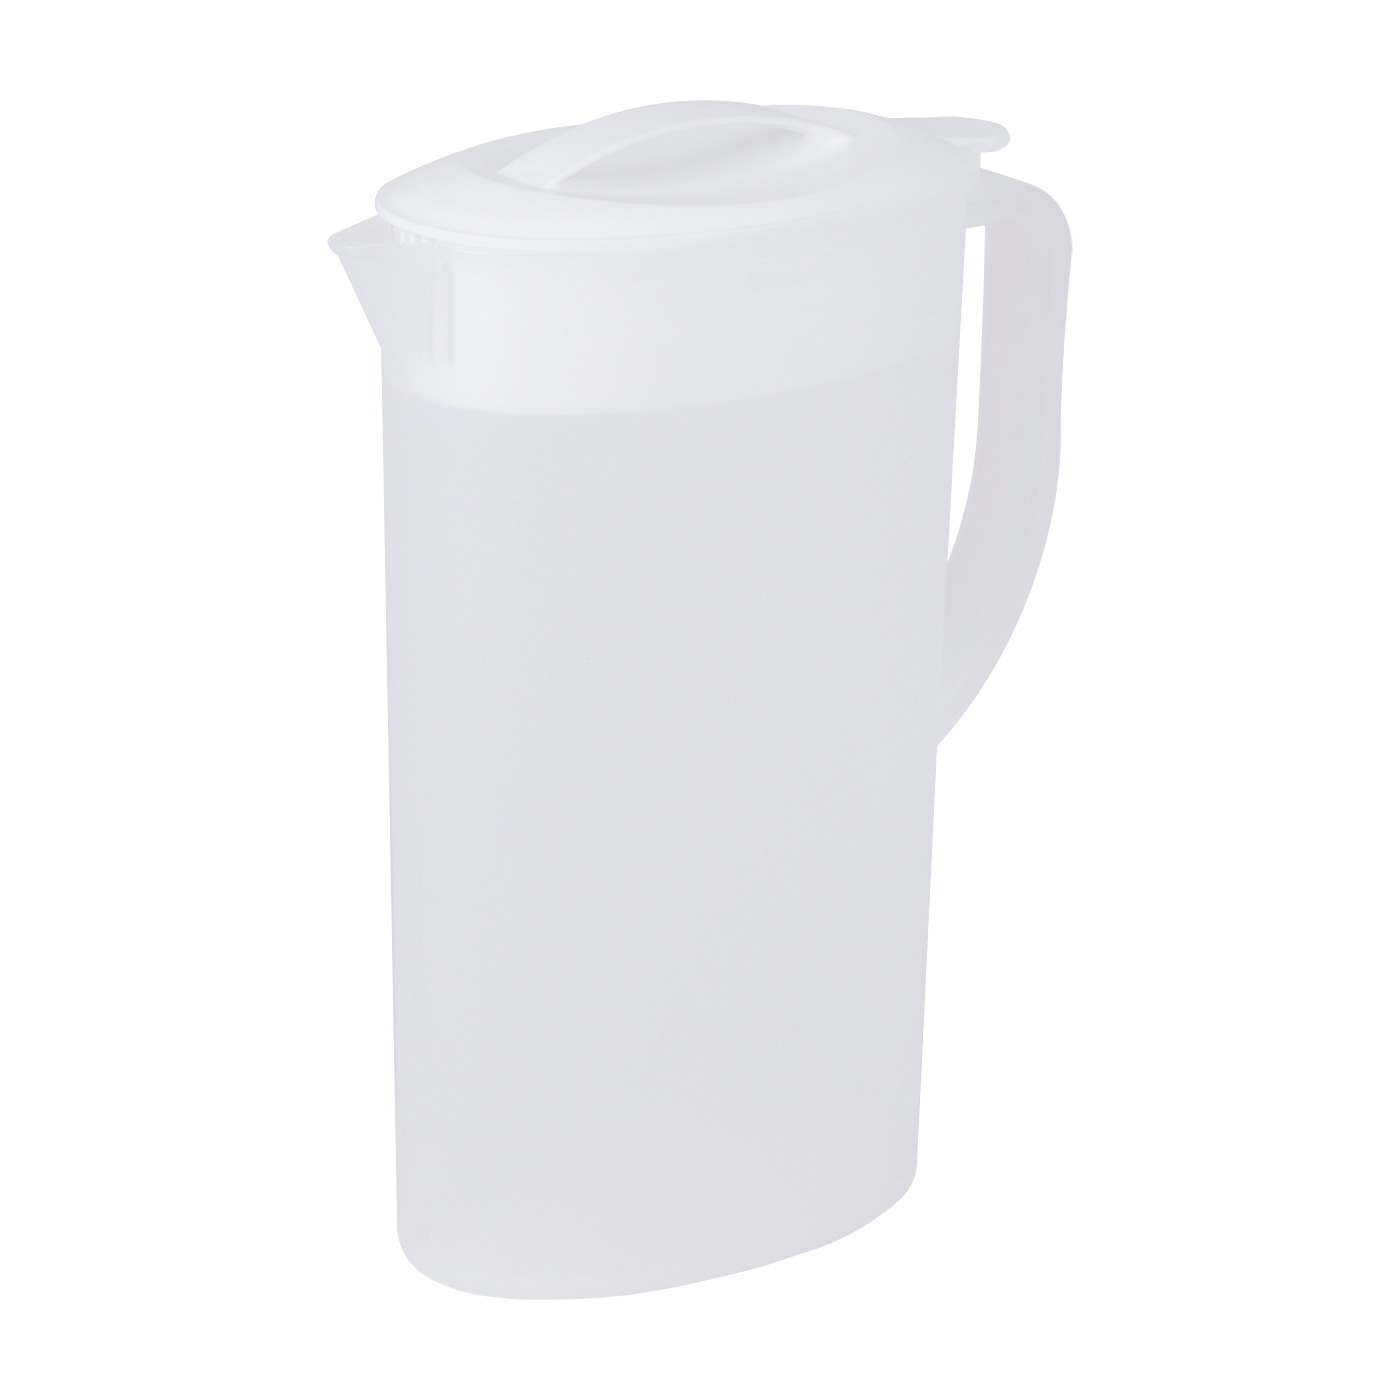 冷水筒 耐熱 ピッチャー 横置き 2リットル 2L 洗いやすい プラスチック おしゃれ 麦茶ポット 水差し 新生活 